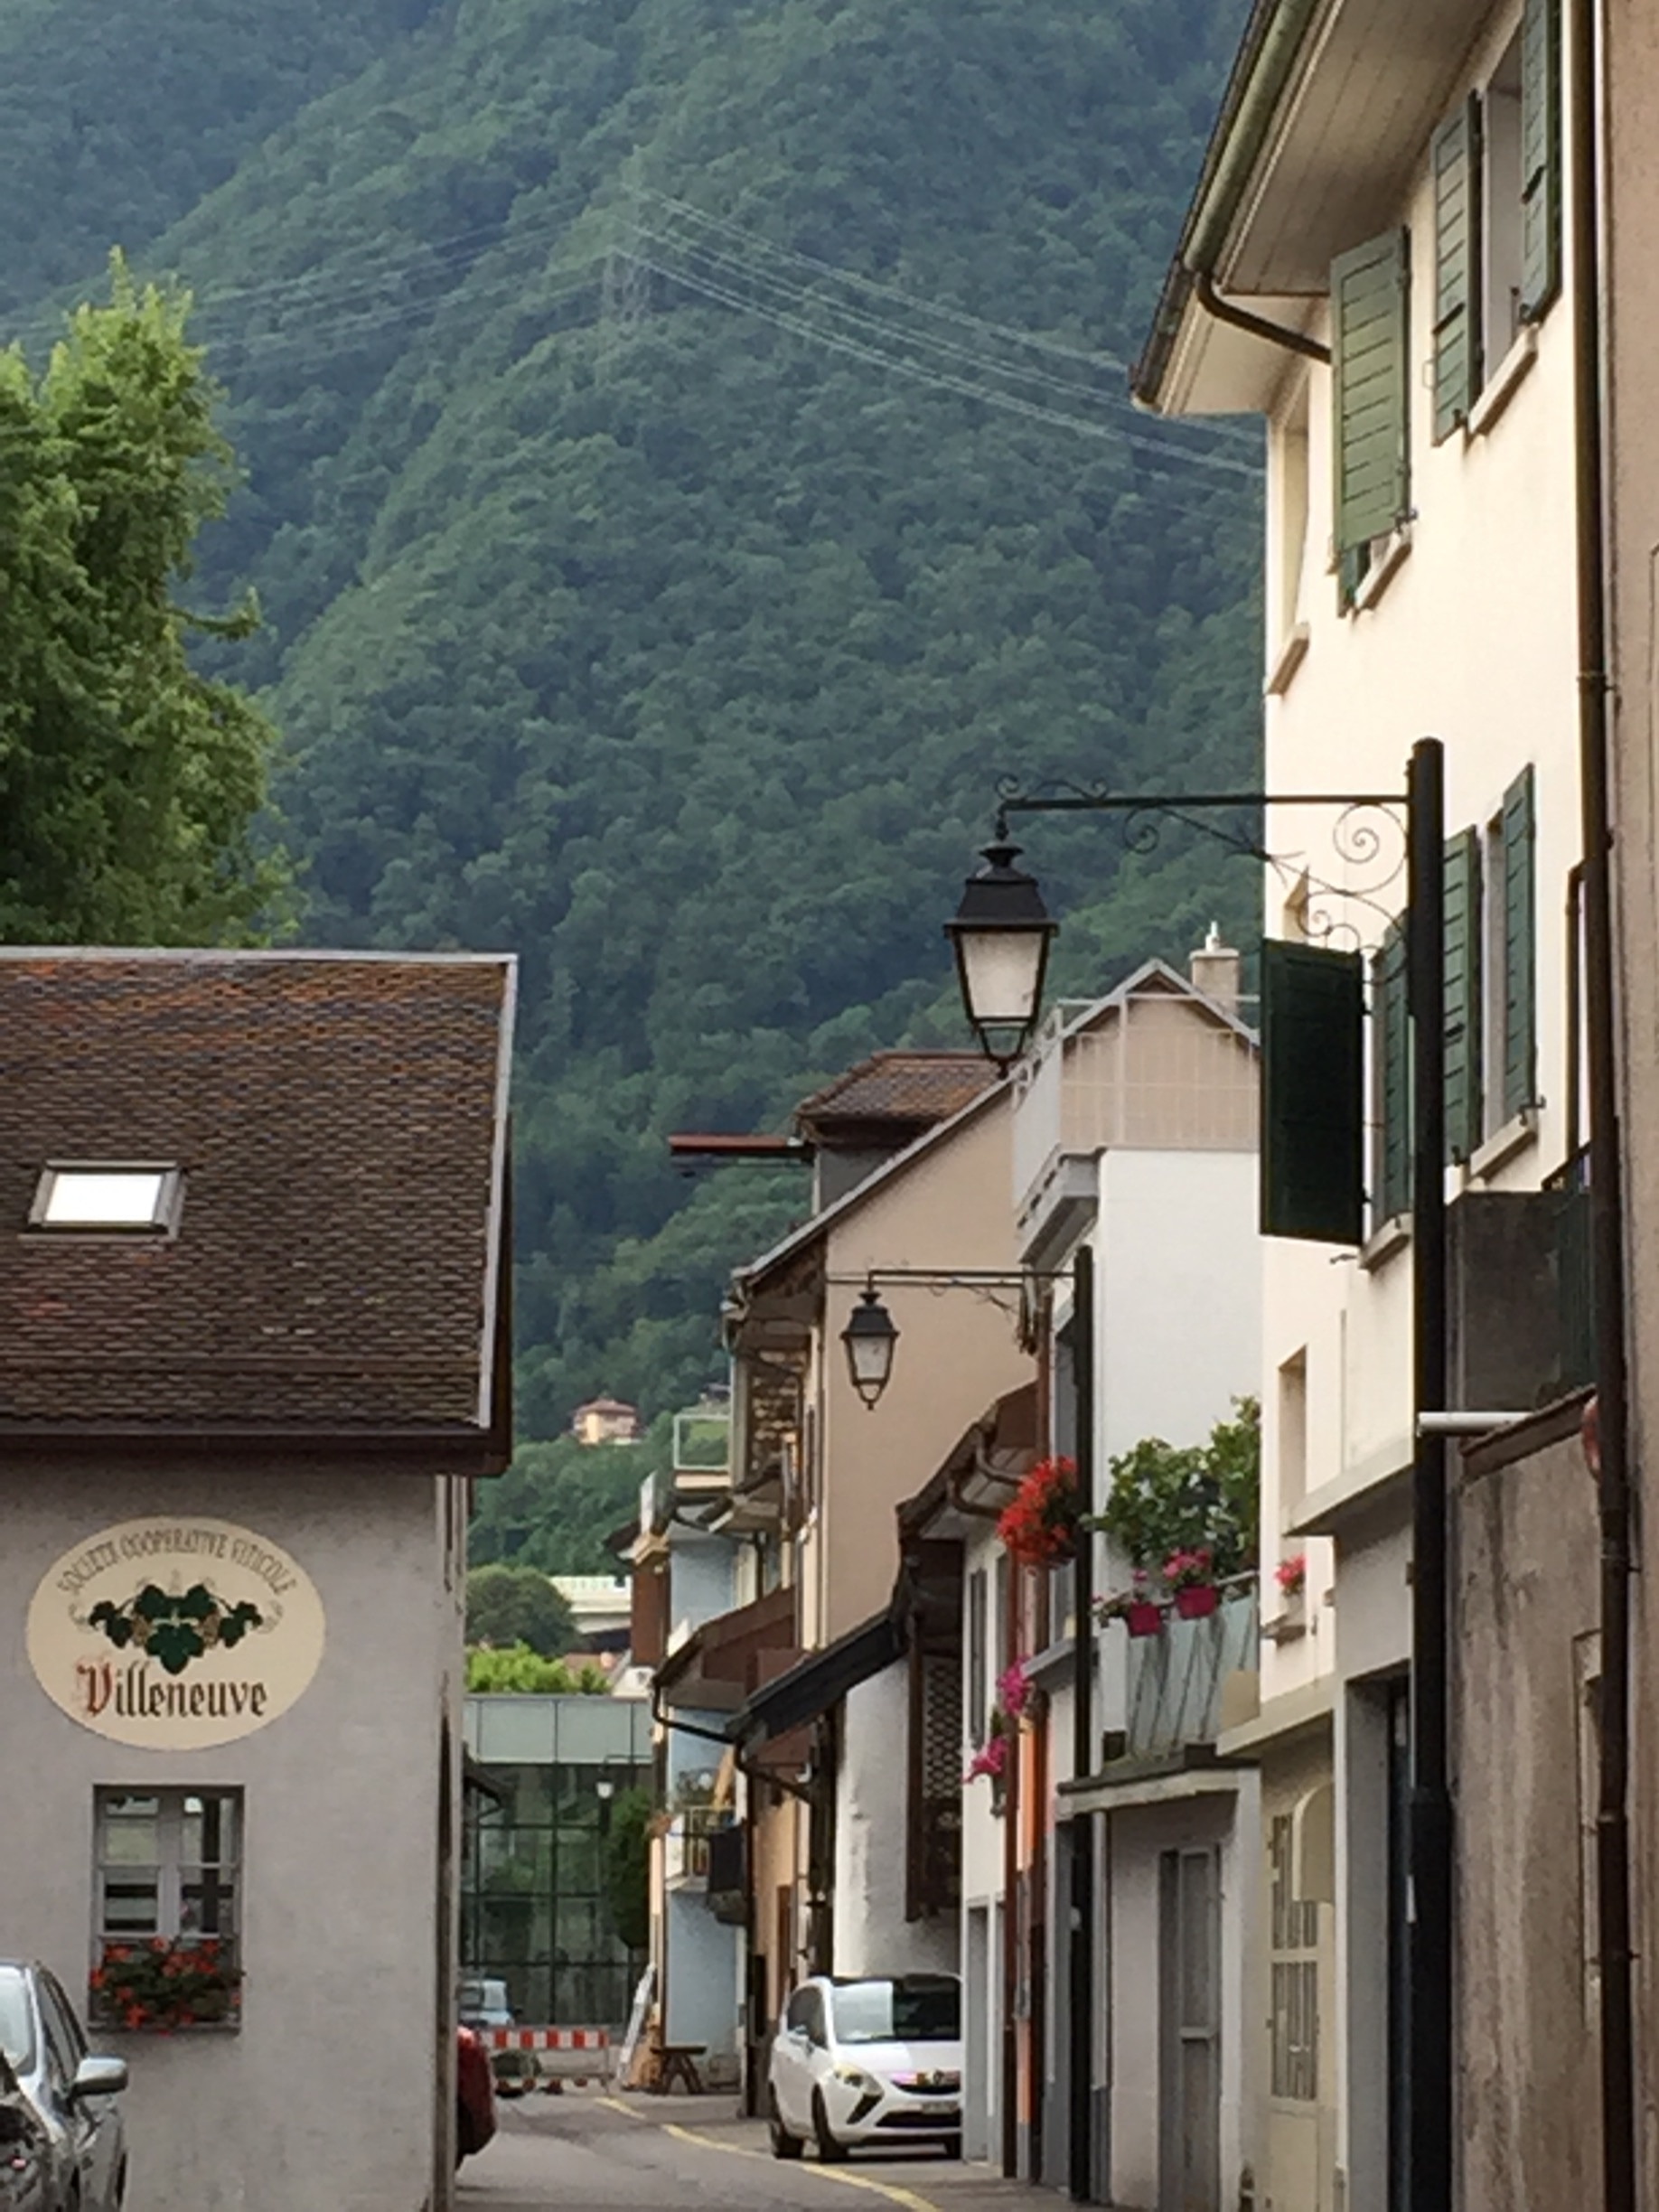 Villeneuve, Canton de Vaud, Suisse